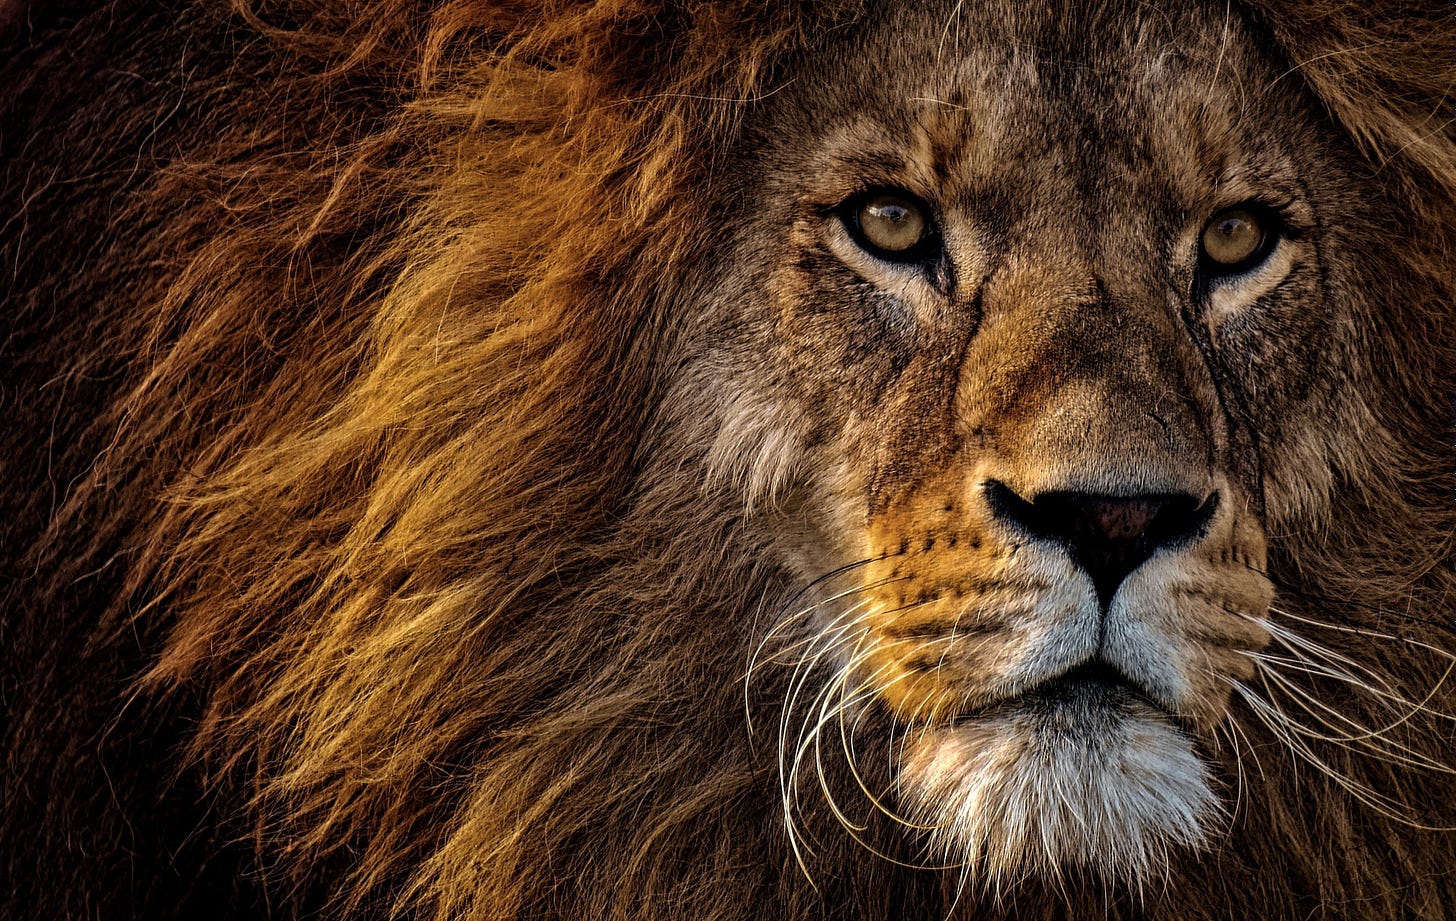 Male lion close up head shot